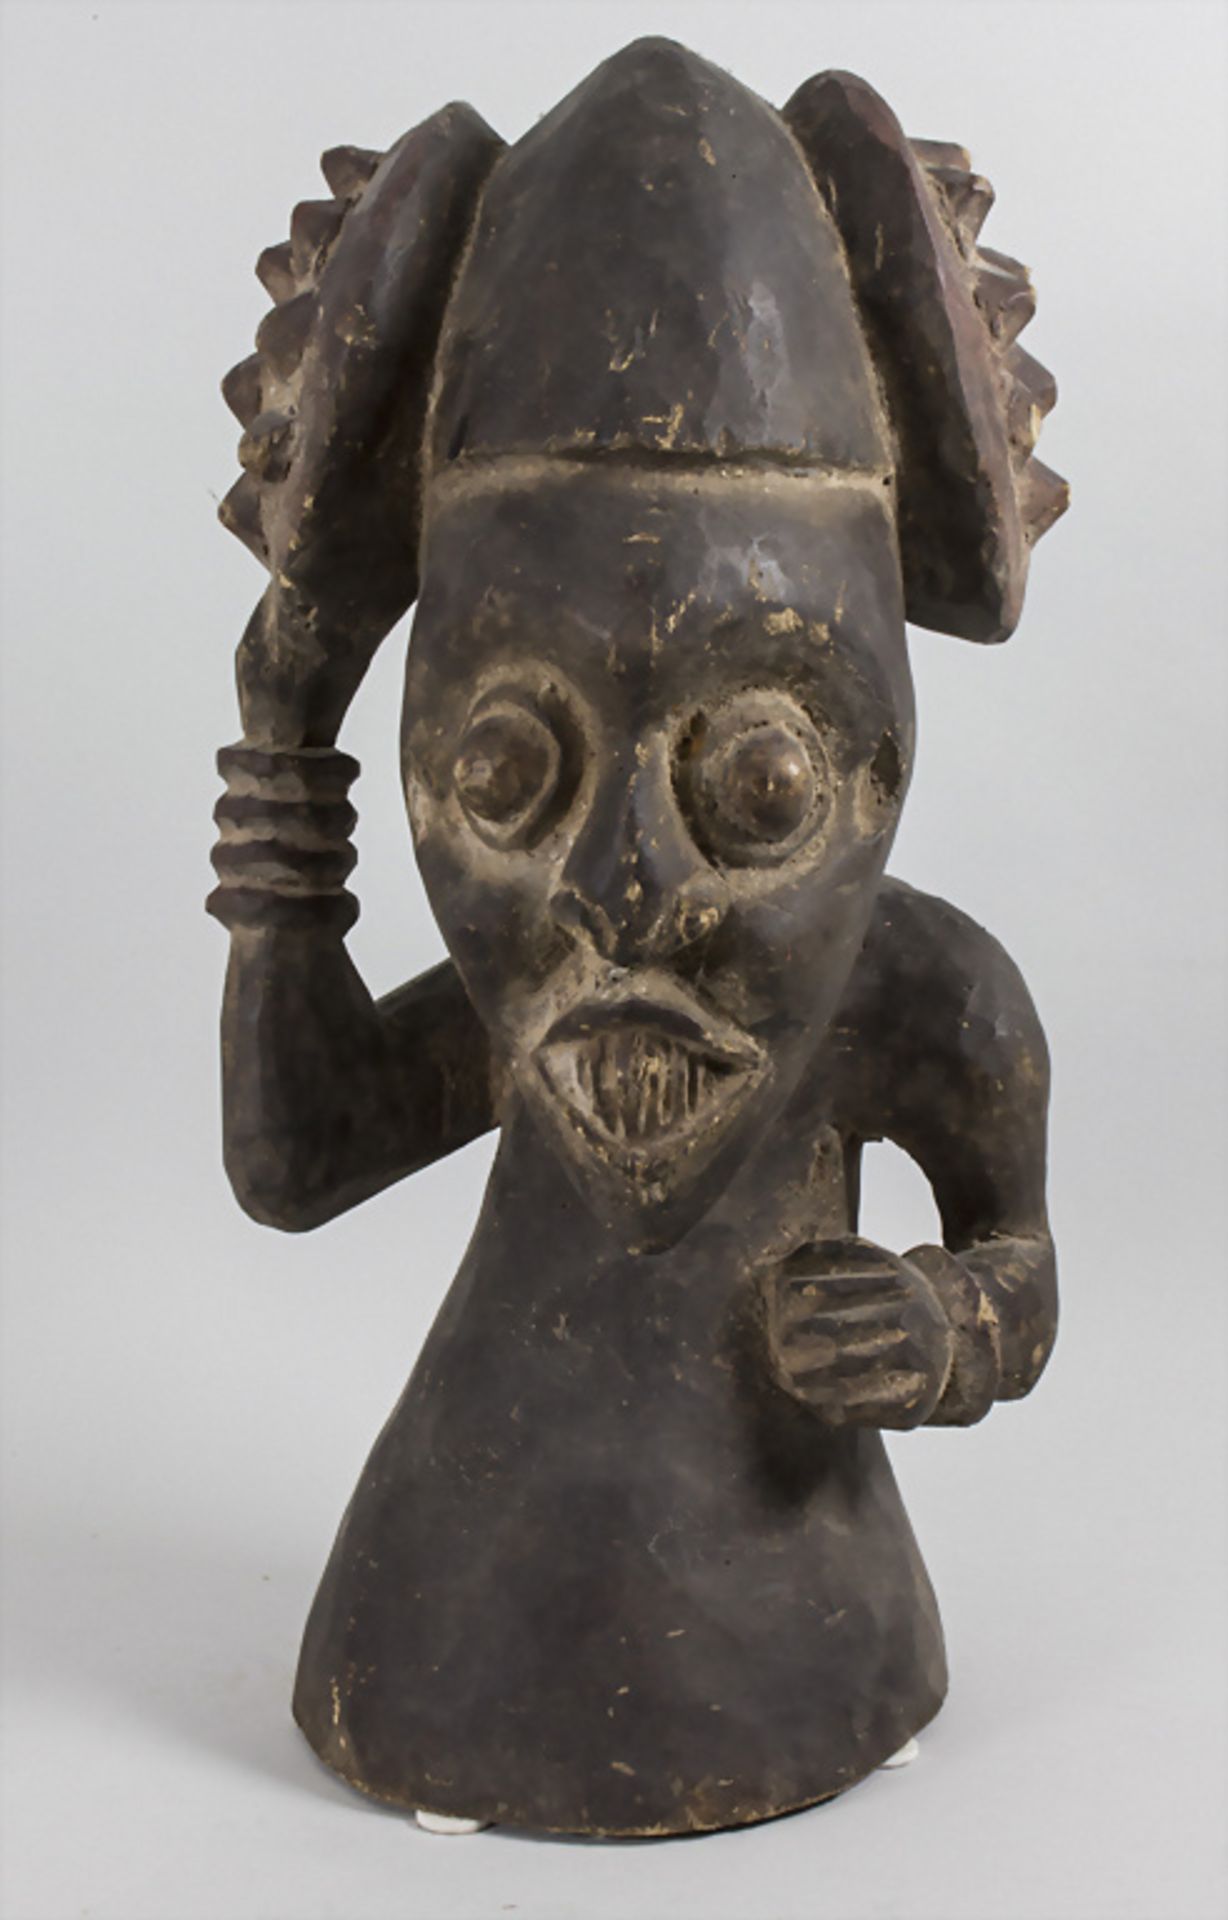 Ahnenfigur / An ancestor figure, Afrika